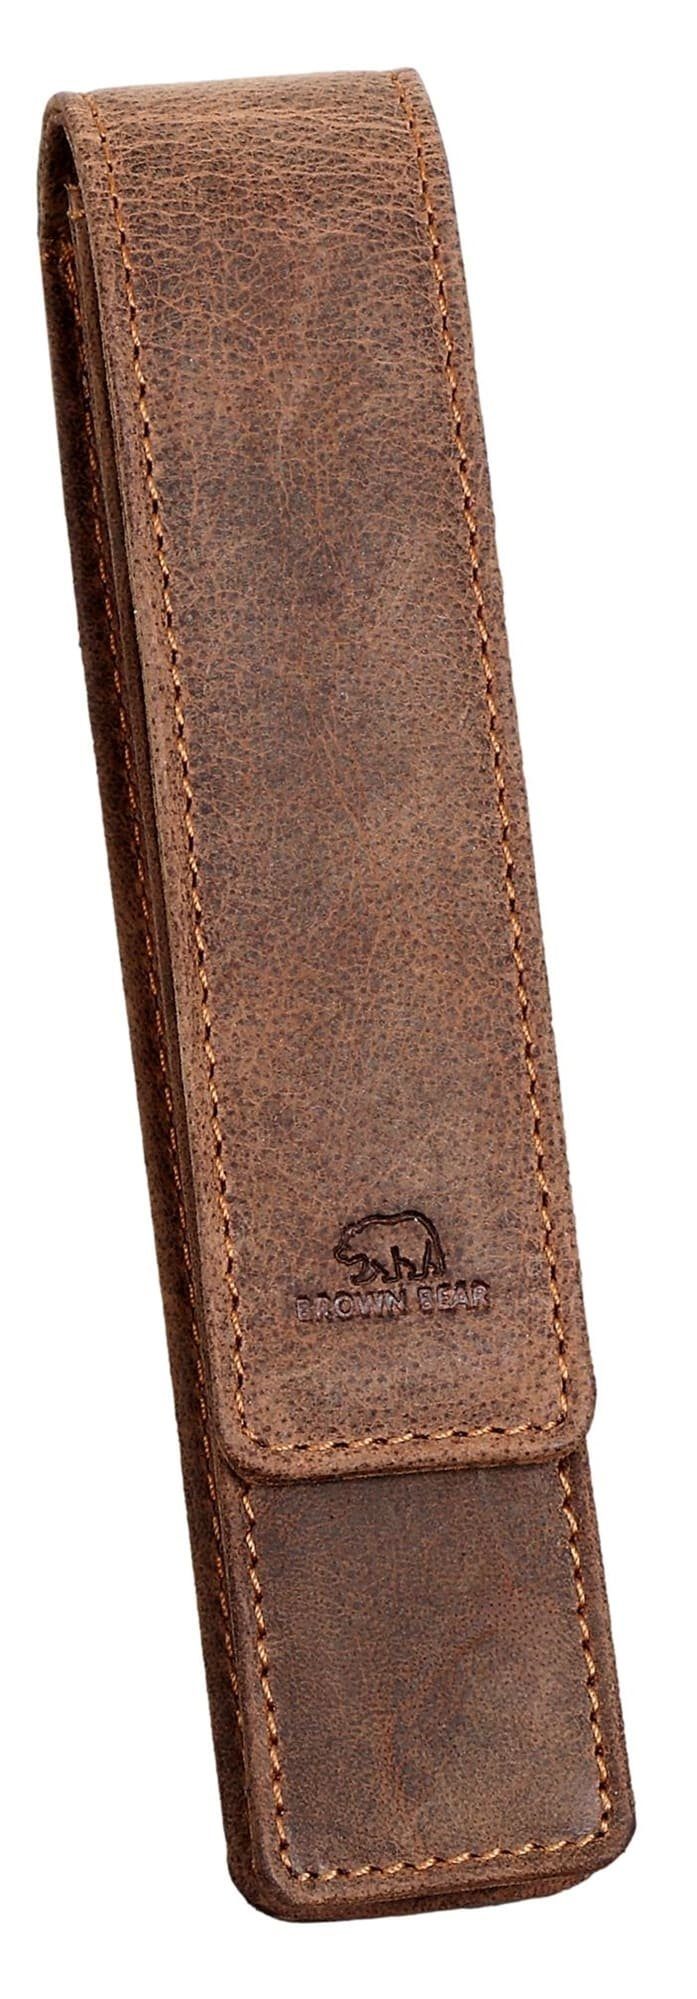 Brown Bear Schreibgeräteetui Golf 01 - Fülleretui aus Echtleder für einen Stift, mit Magnetverschluss für Damen und Herren Braun Vintage Braun-Vintage